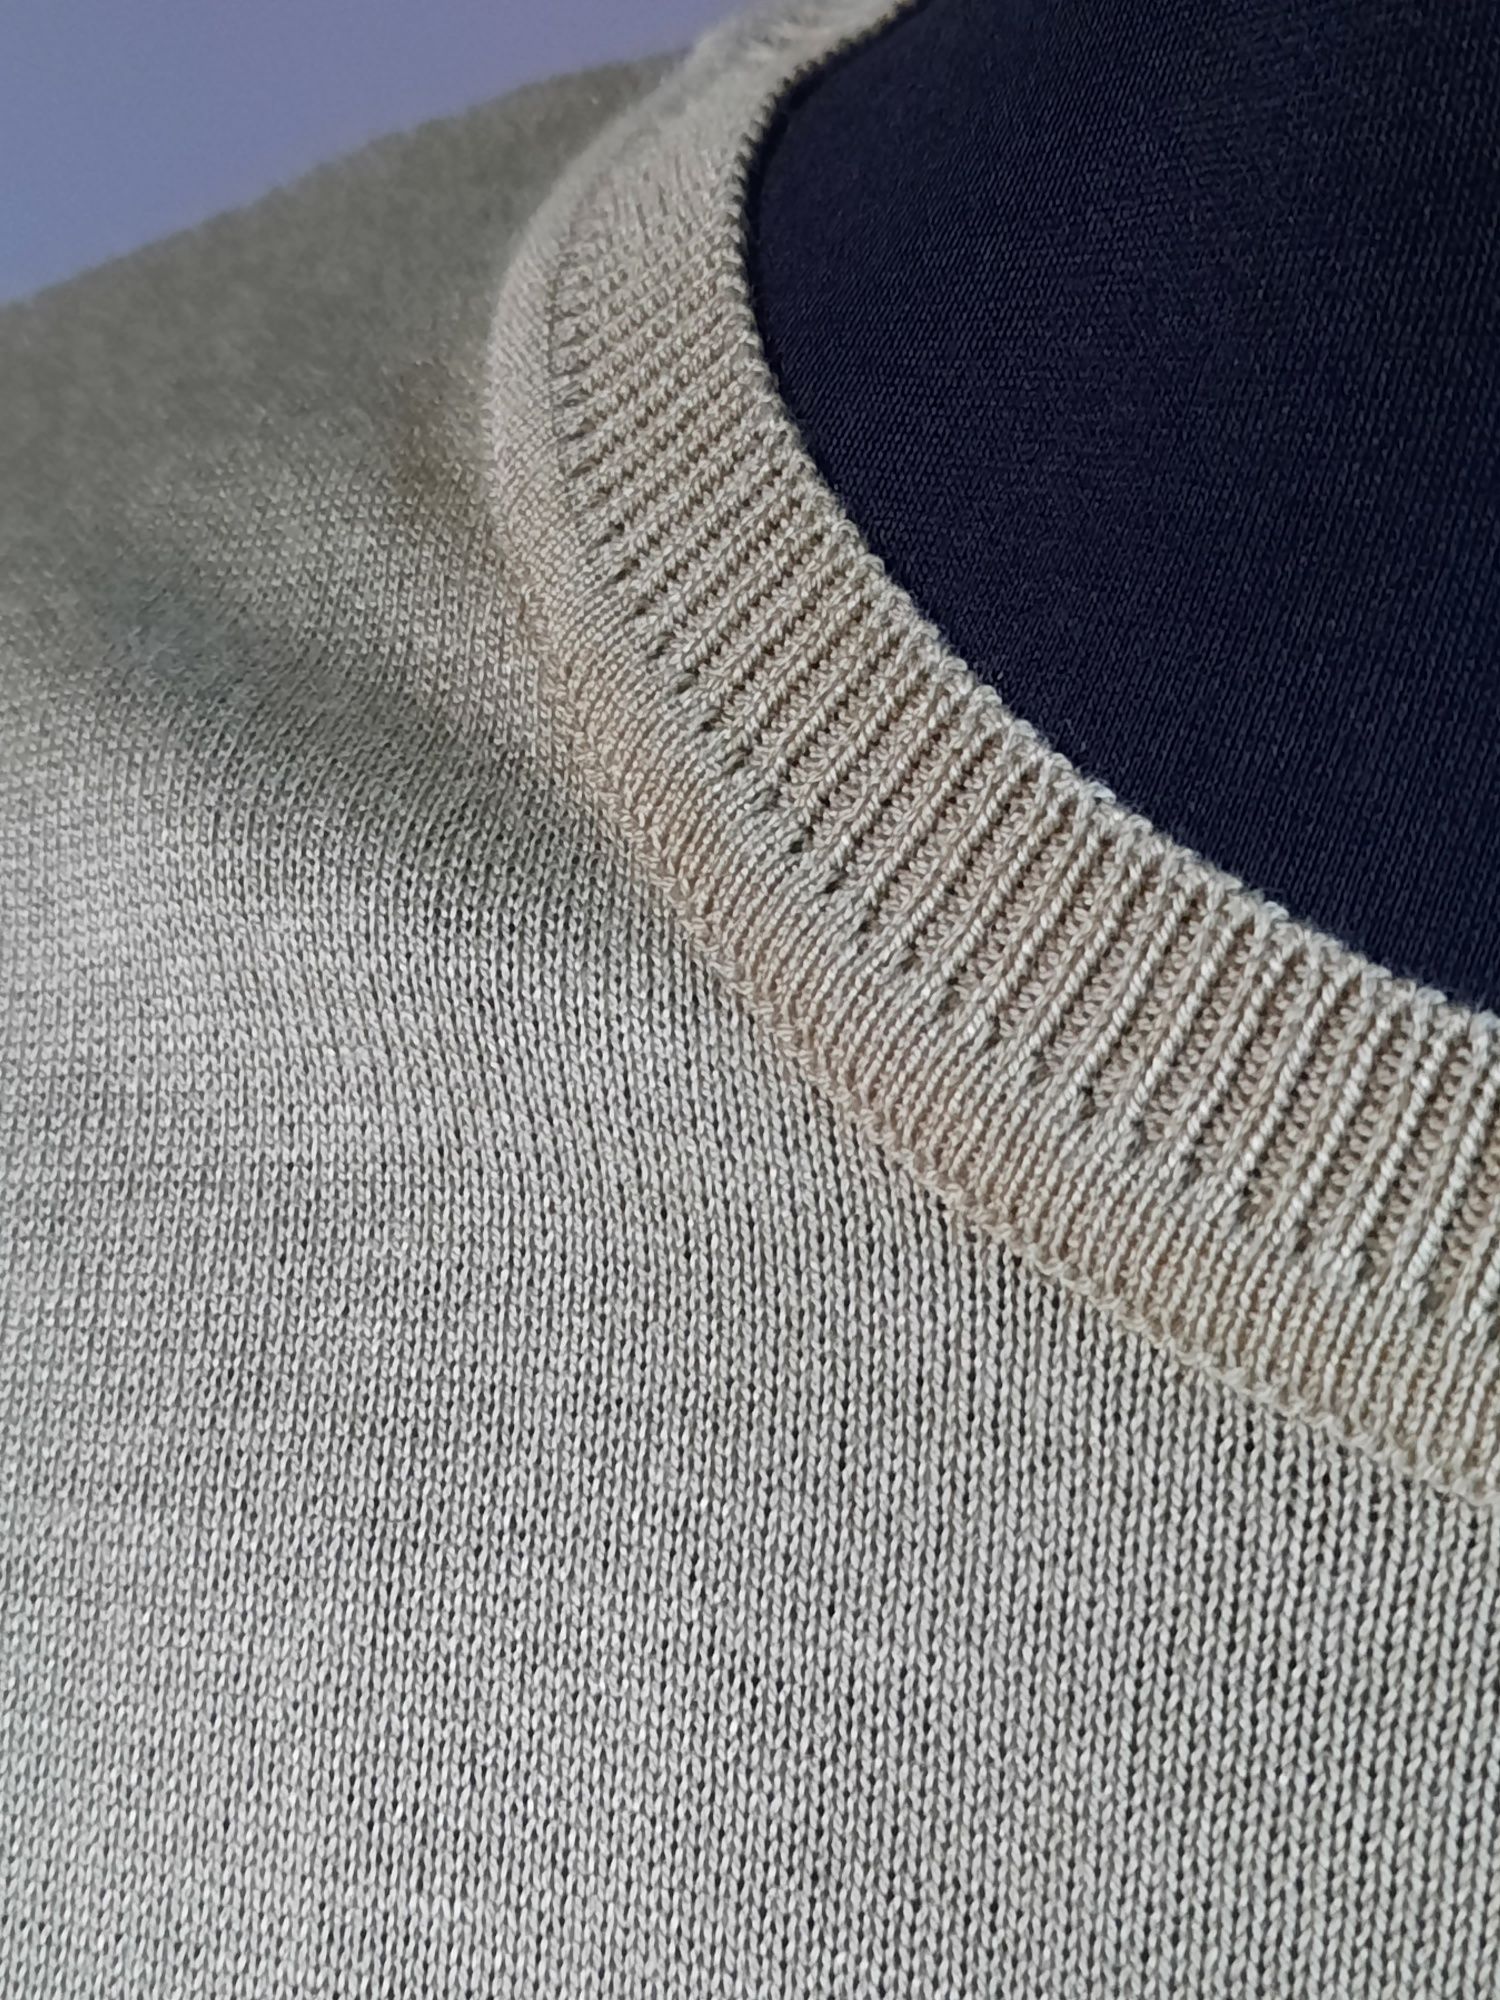 Bluzka sweterkowa C&A roz.48,  50, XL